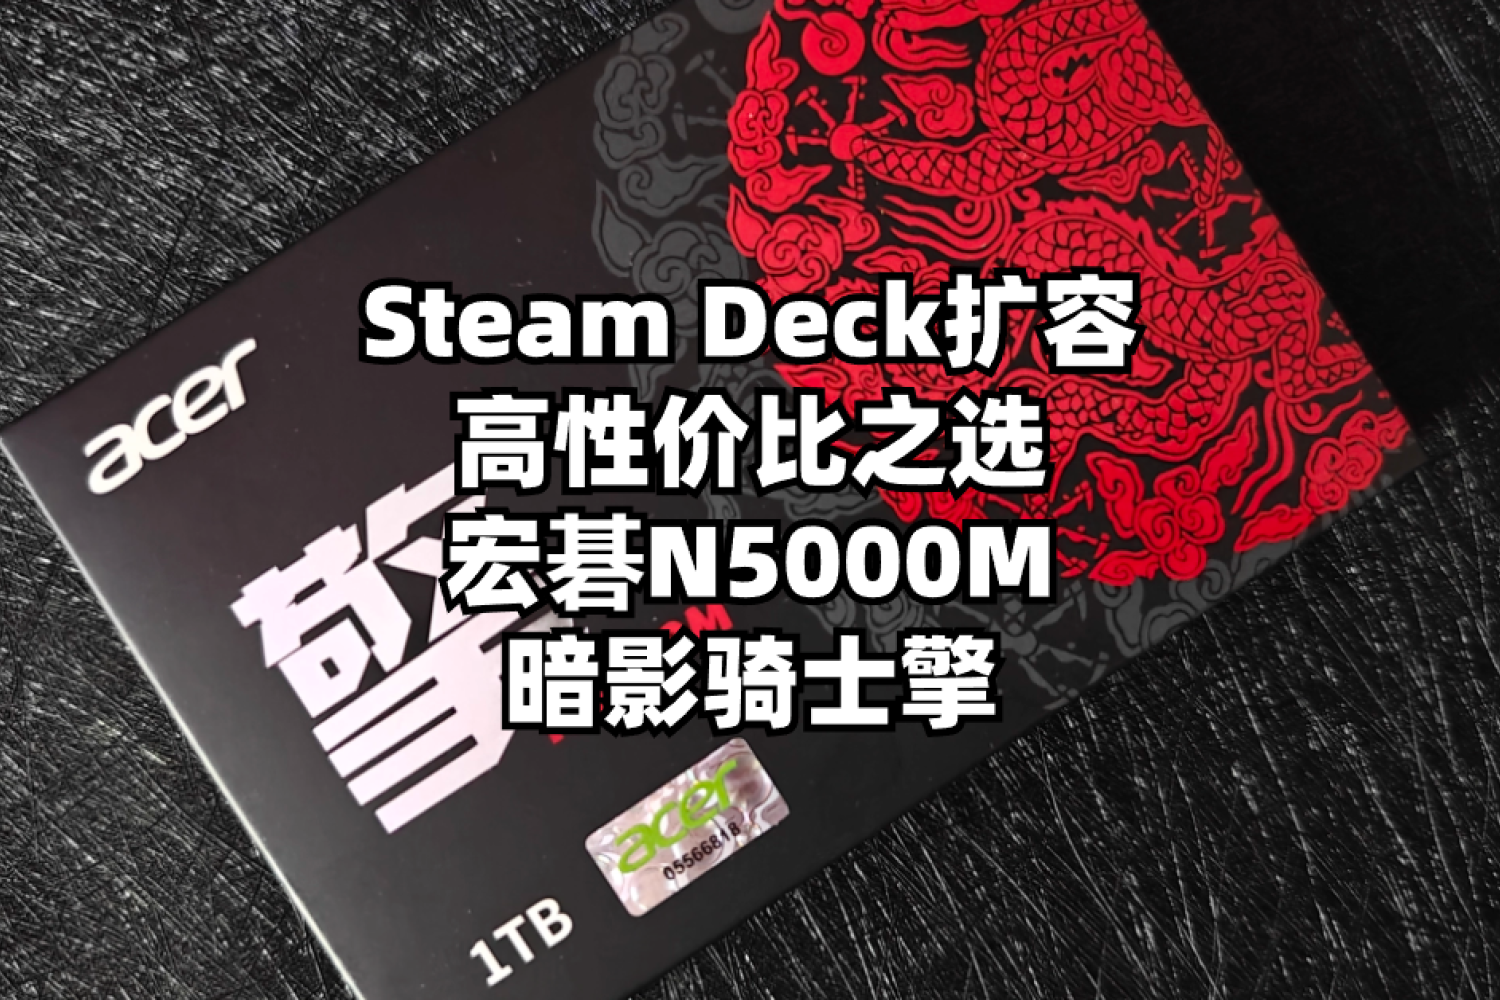 宏碁暗影骑士擎N5000M：Steam Deck扩容之选